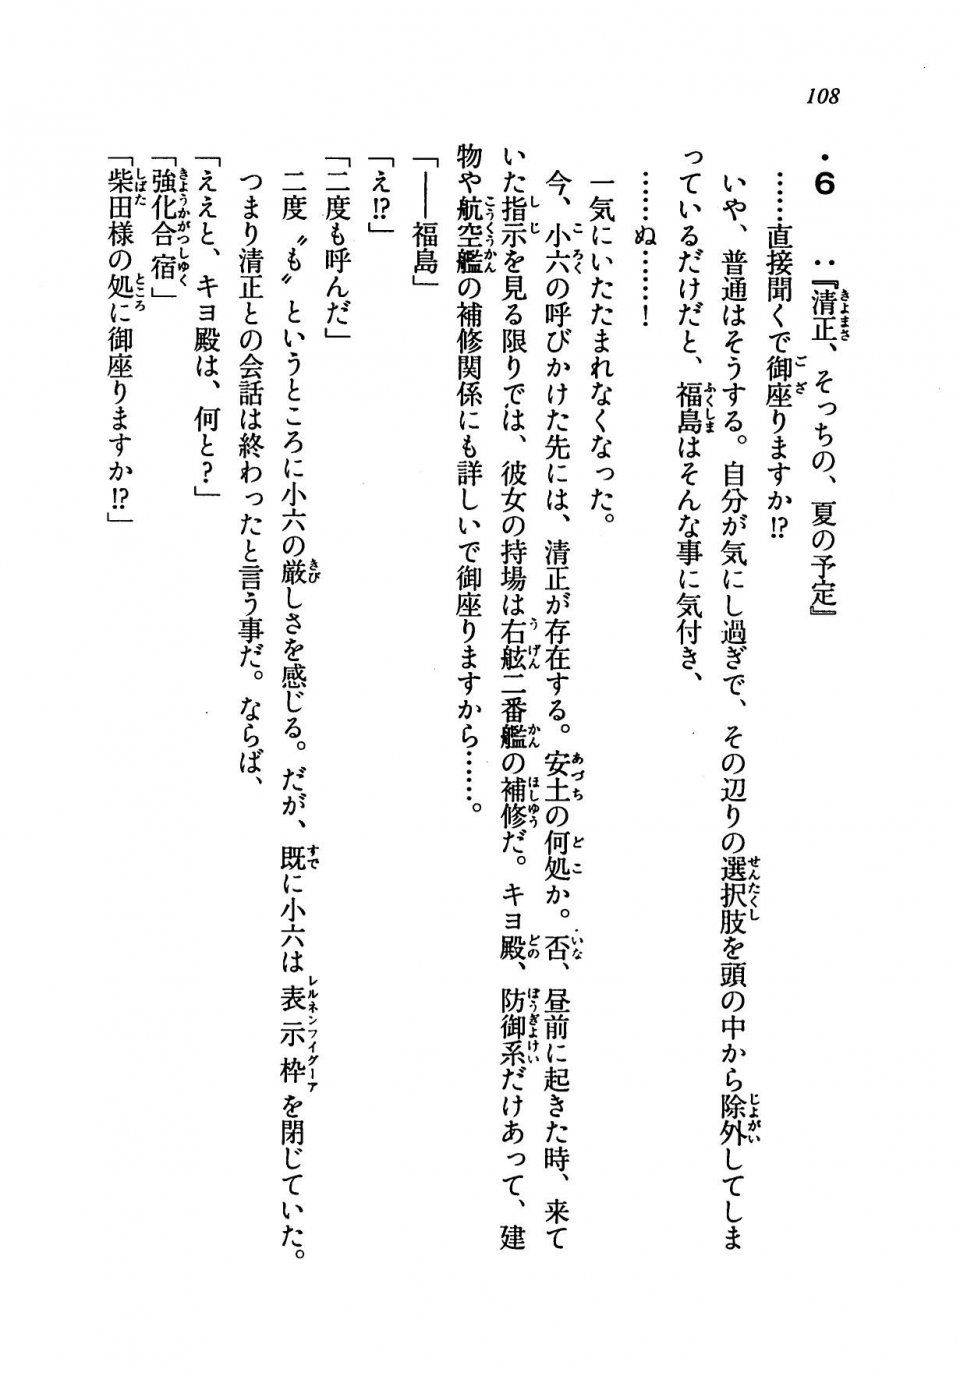 Kyoukai Senjou no Horizon LN Vol 19(8A) - Photo #108